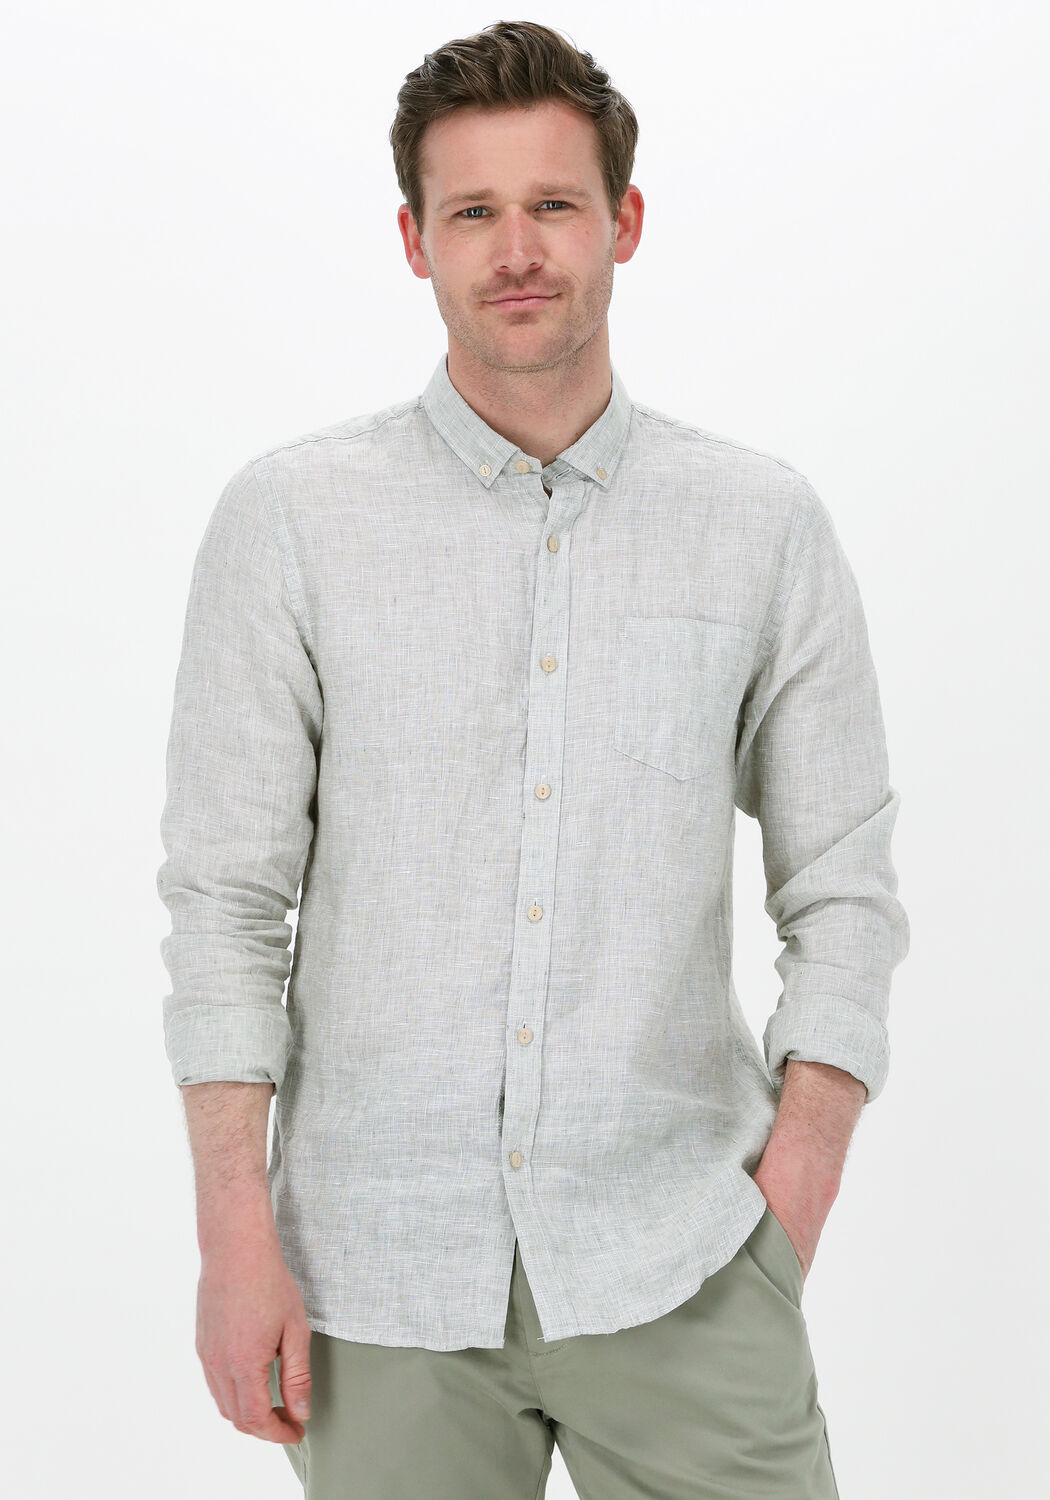 Kleding Jongenskleding Tops & T-shirts Overhemden en buttondowns Spangled Shirt 